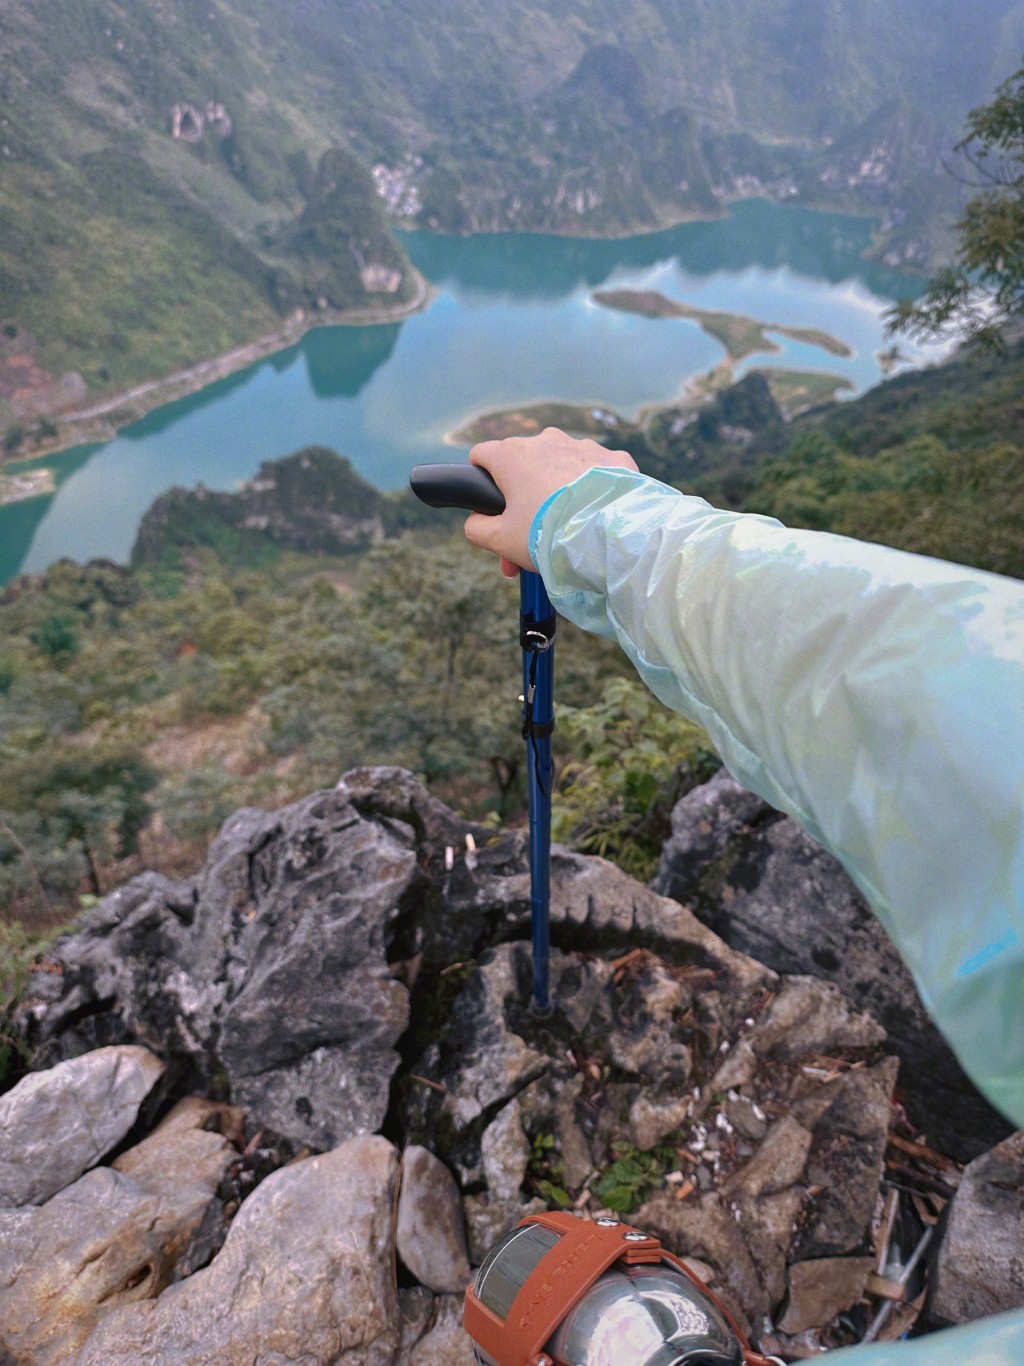 张馨予在广西浩坤湖行山打卡。微博